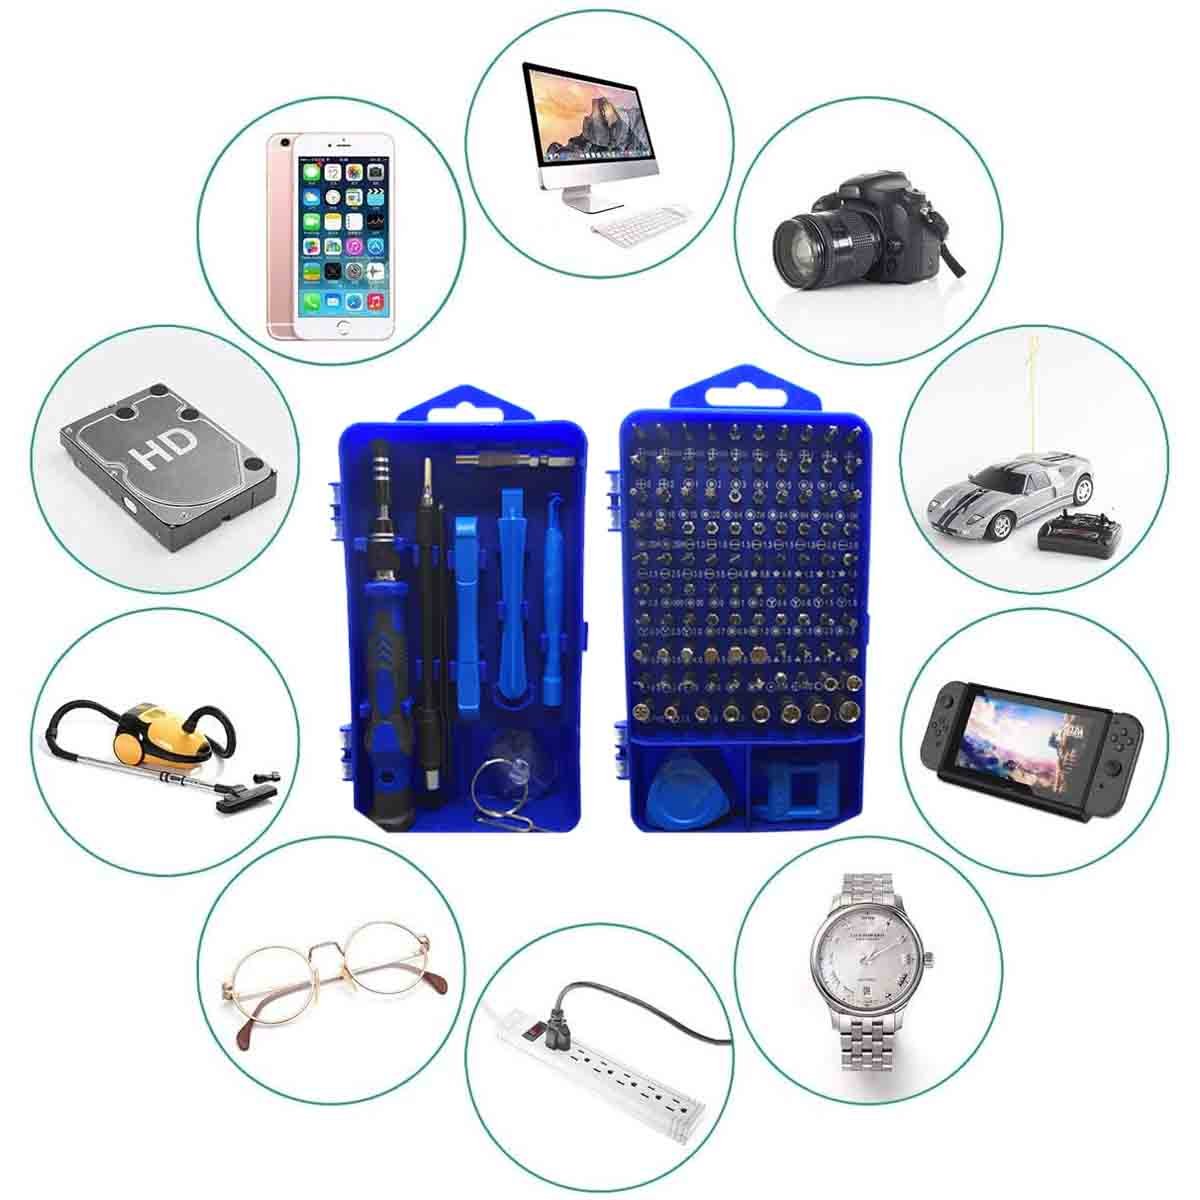  Kit de 22 herramientas de reparación de teléfonos móviles, kit  de destornilladores multifunción para reparación de teléfonos celulares,  relojes o gafas. : Electrónica